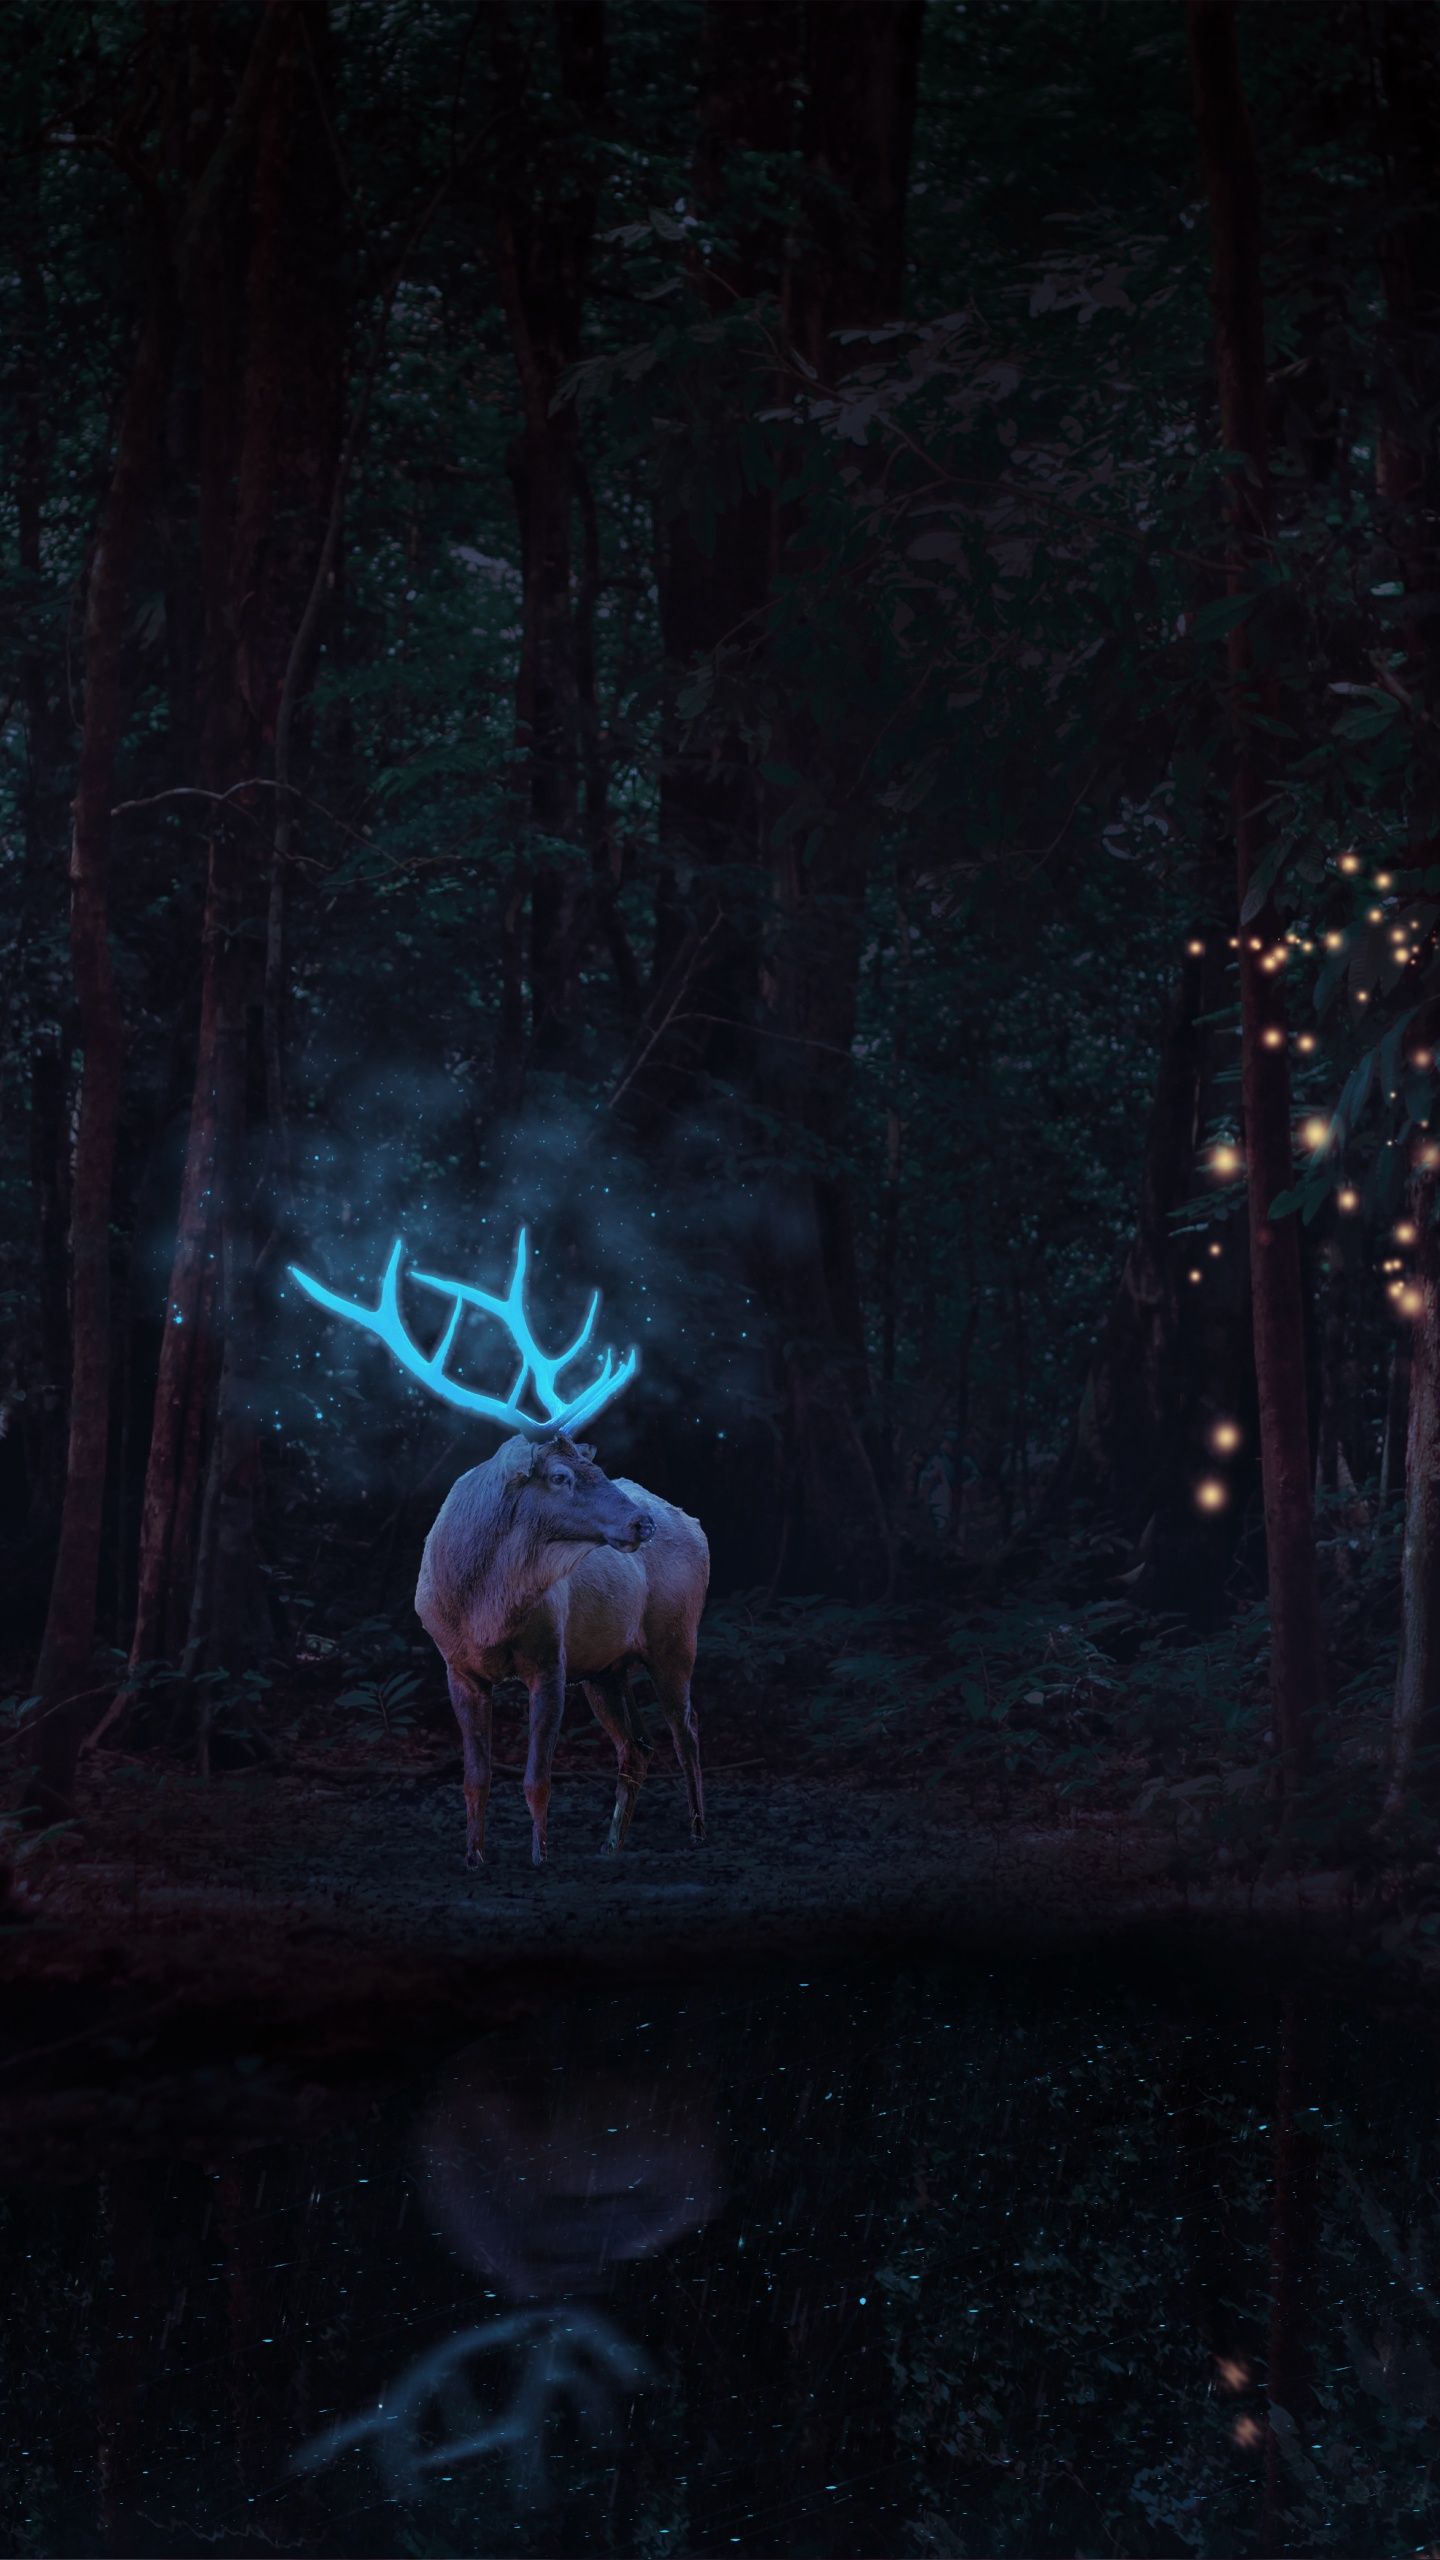 A deer with antlers in the woods - Deer